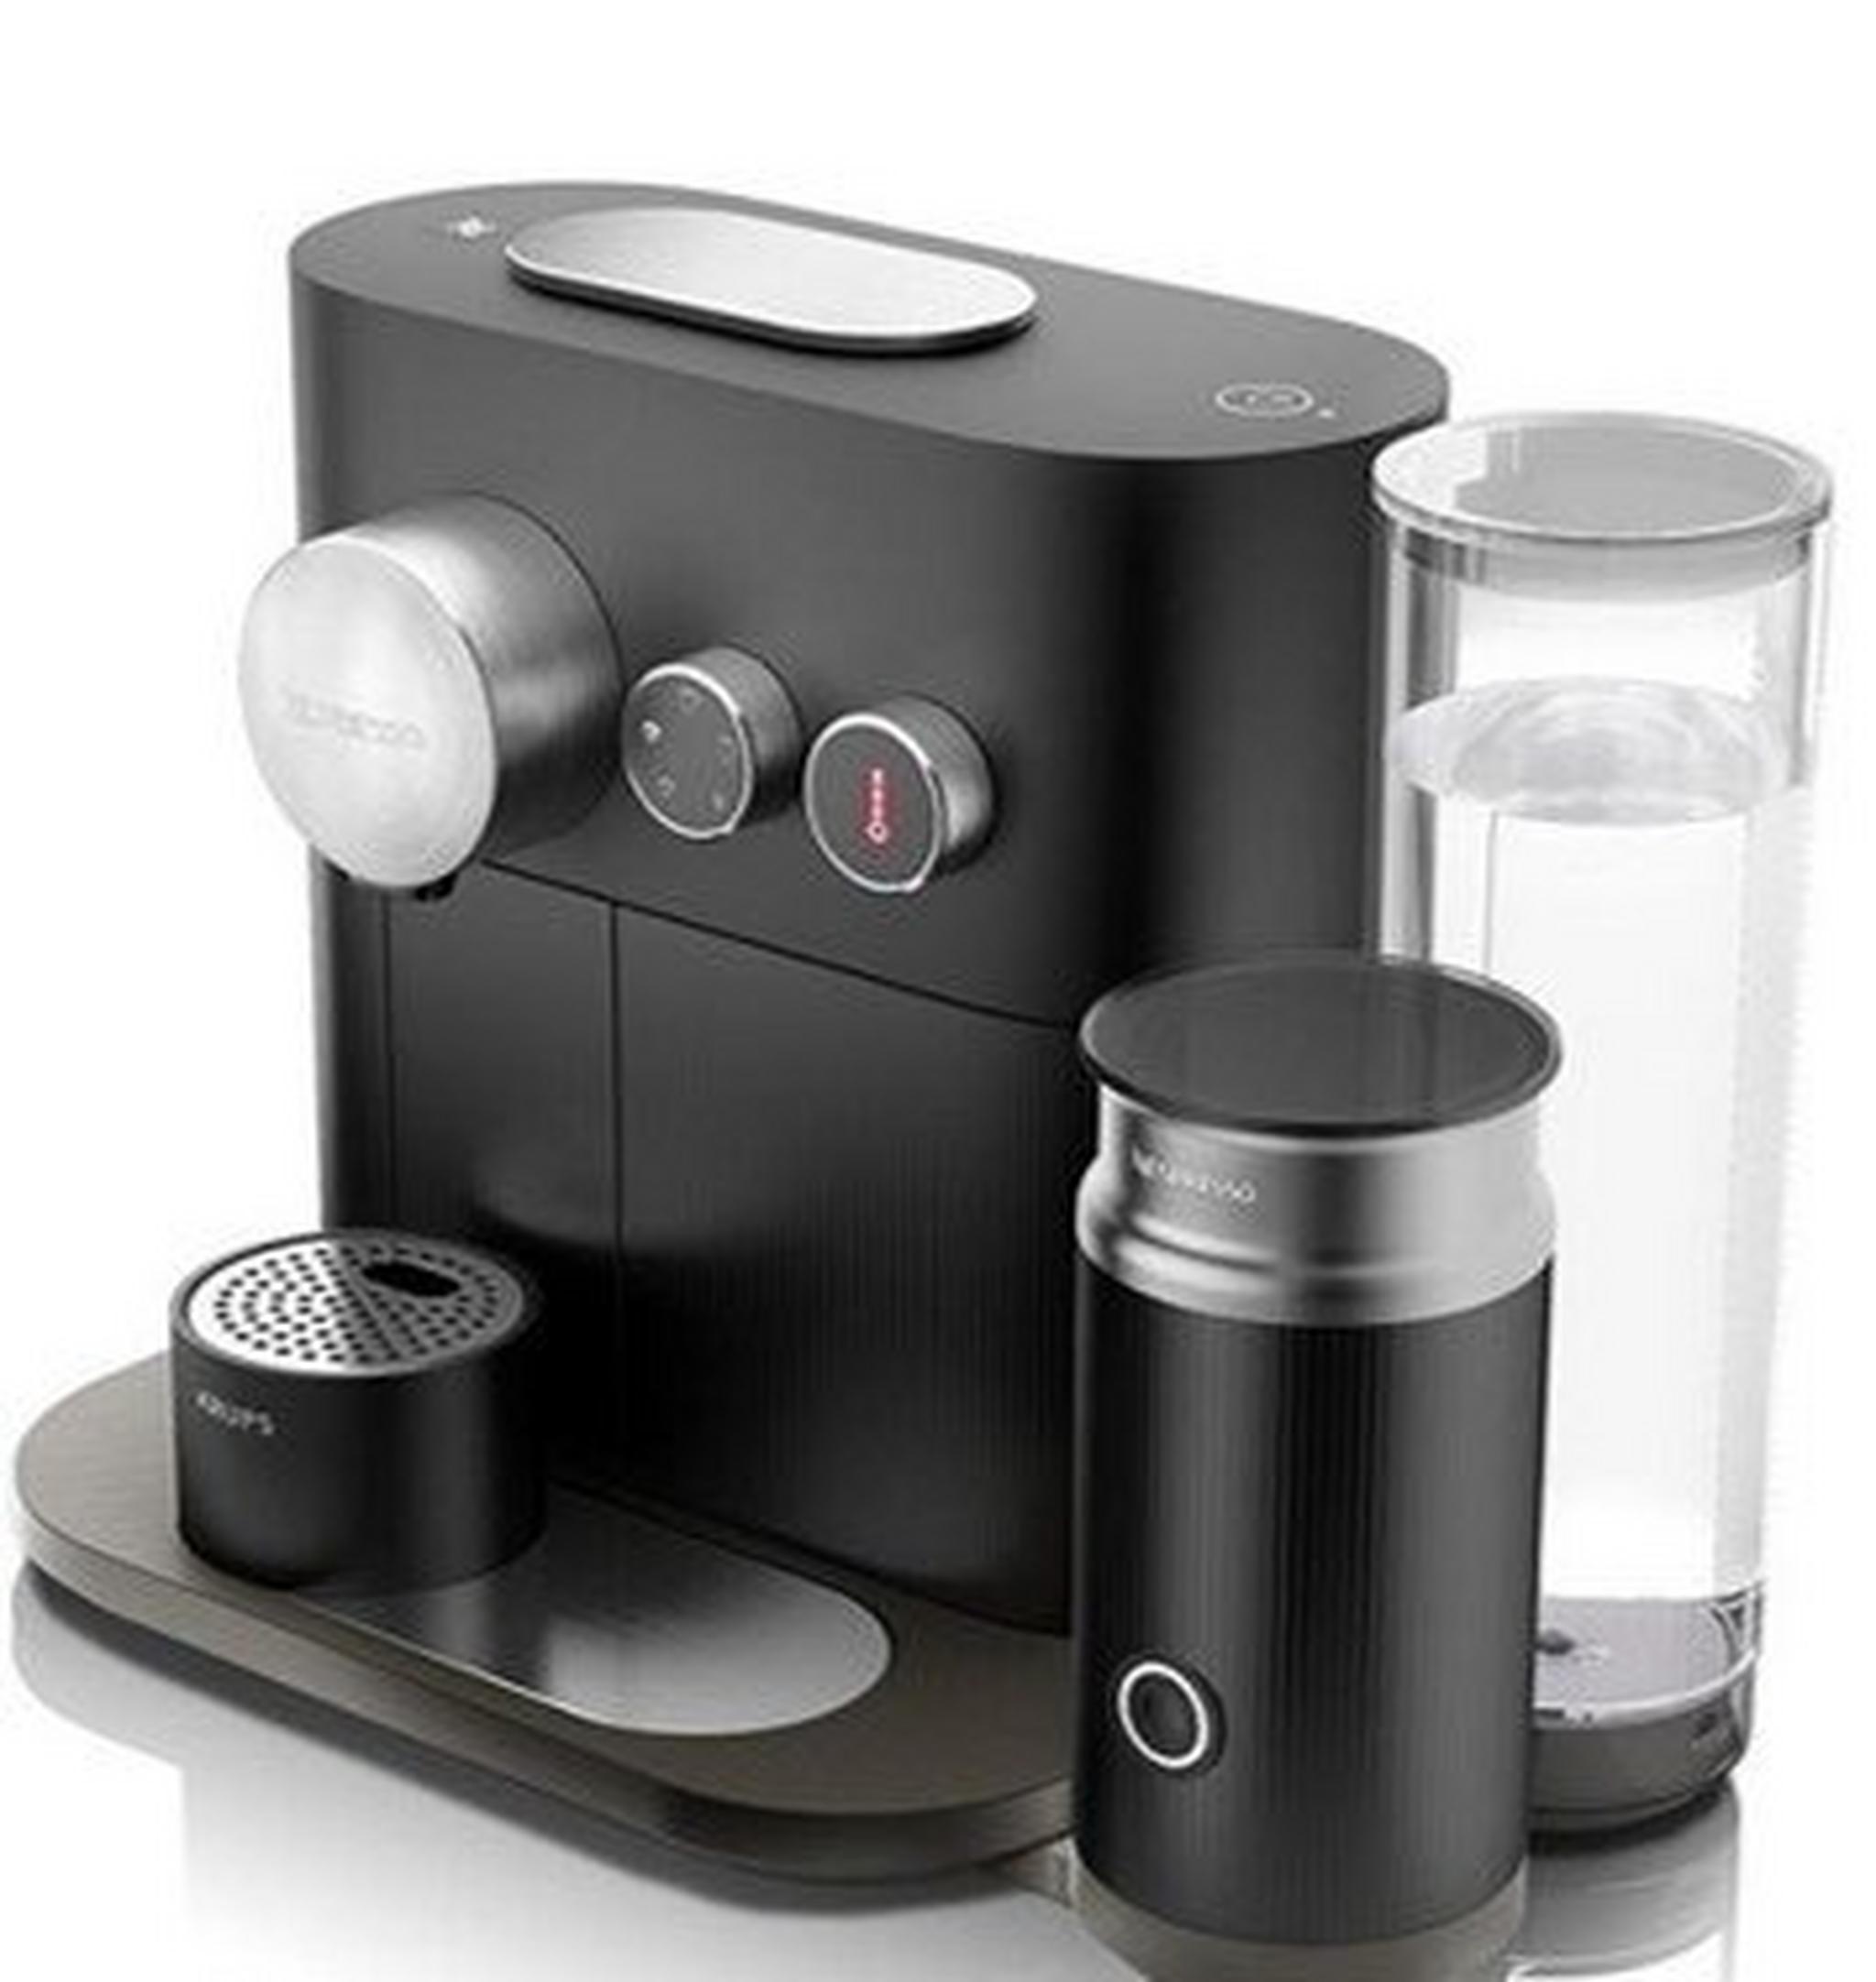 ماكينة صنع قهوة نسبريسو اكسبيرت مع الحليب - أسود (C85-ME-BK-NE)